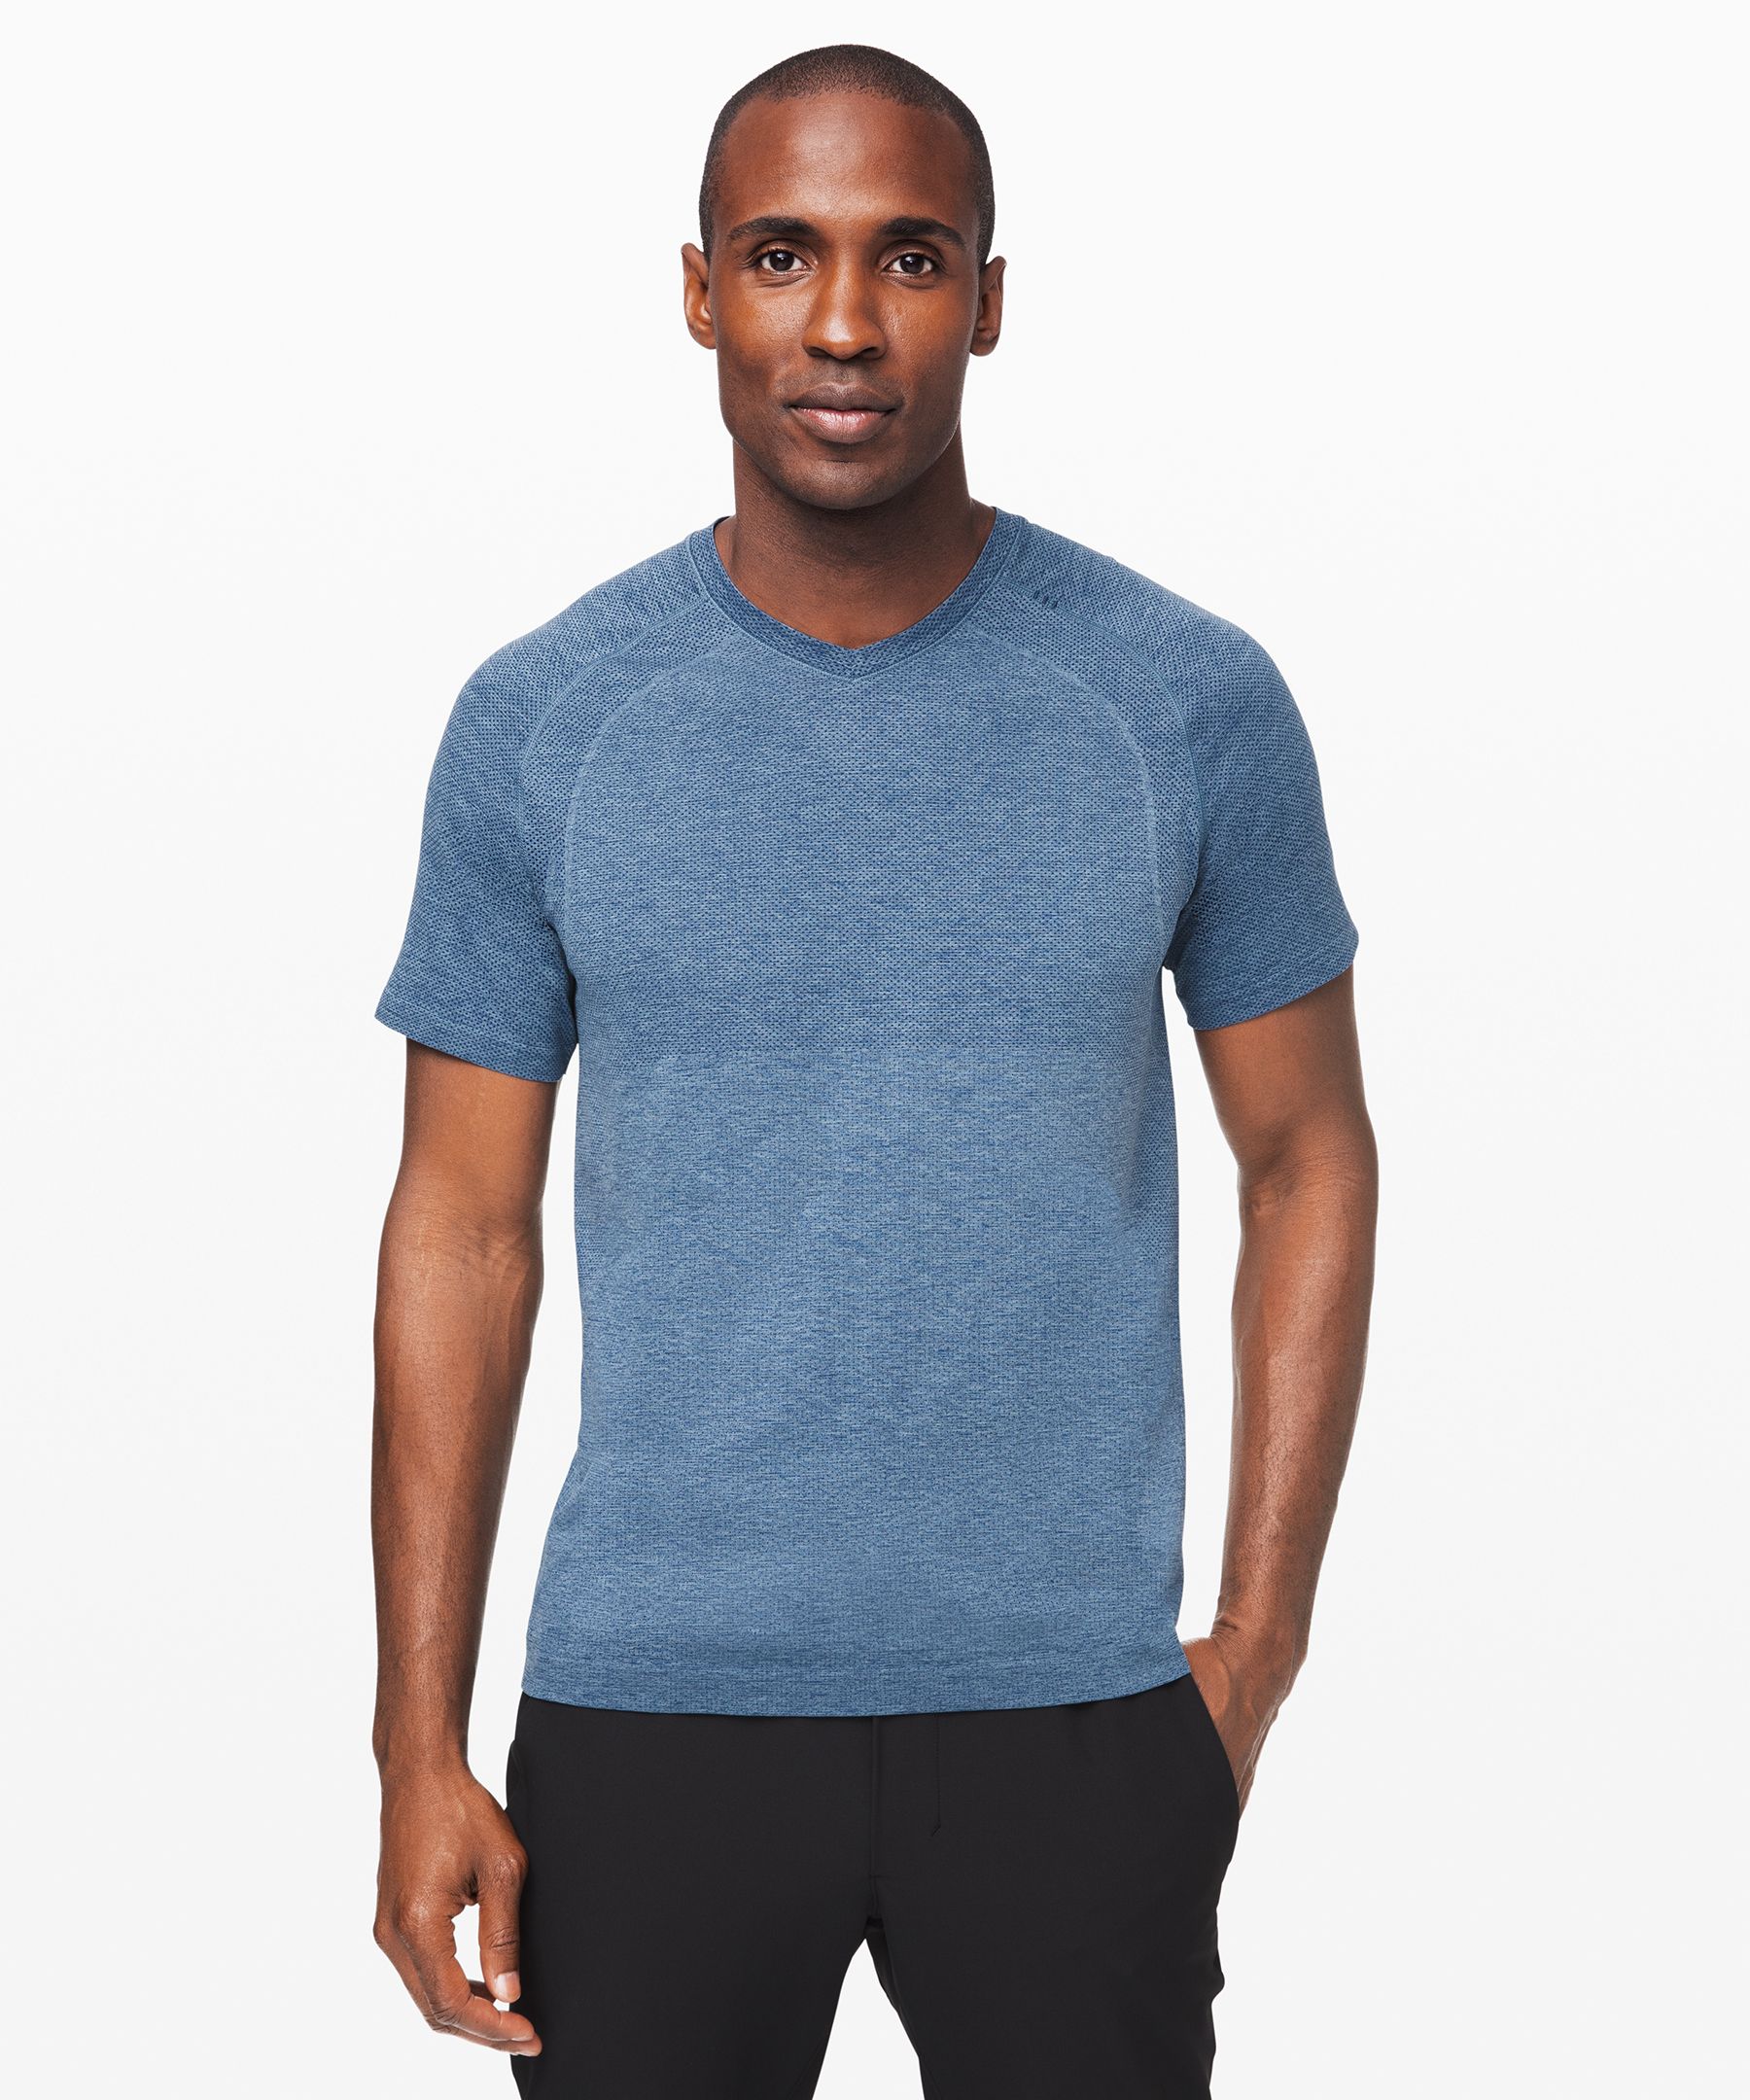 Metal Vent Tech Short Sleeve Shirt 2.0 | Men's Short Sleeve Shirts 